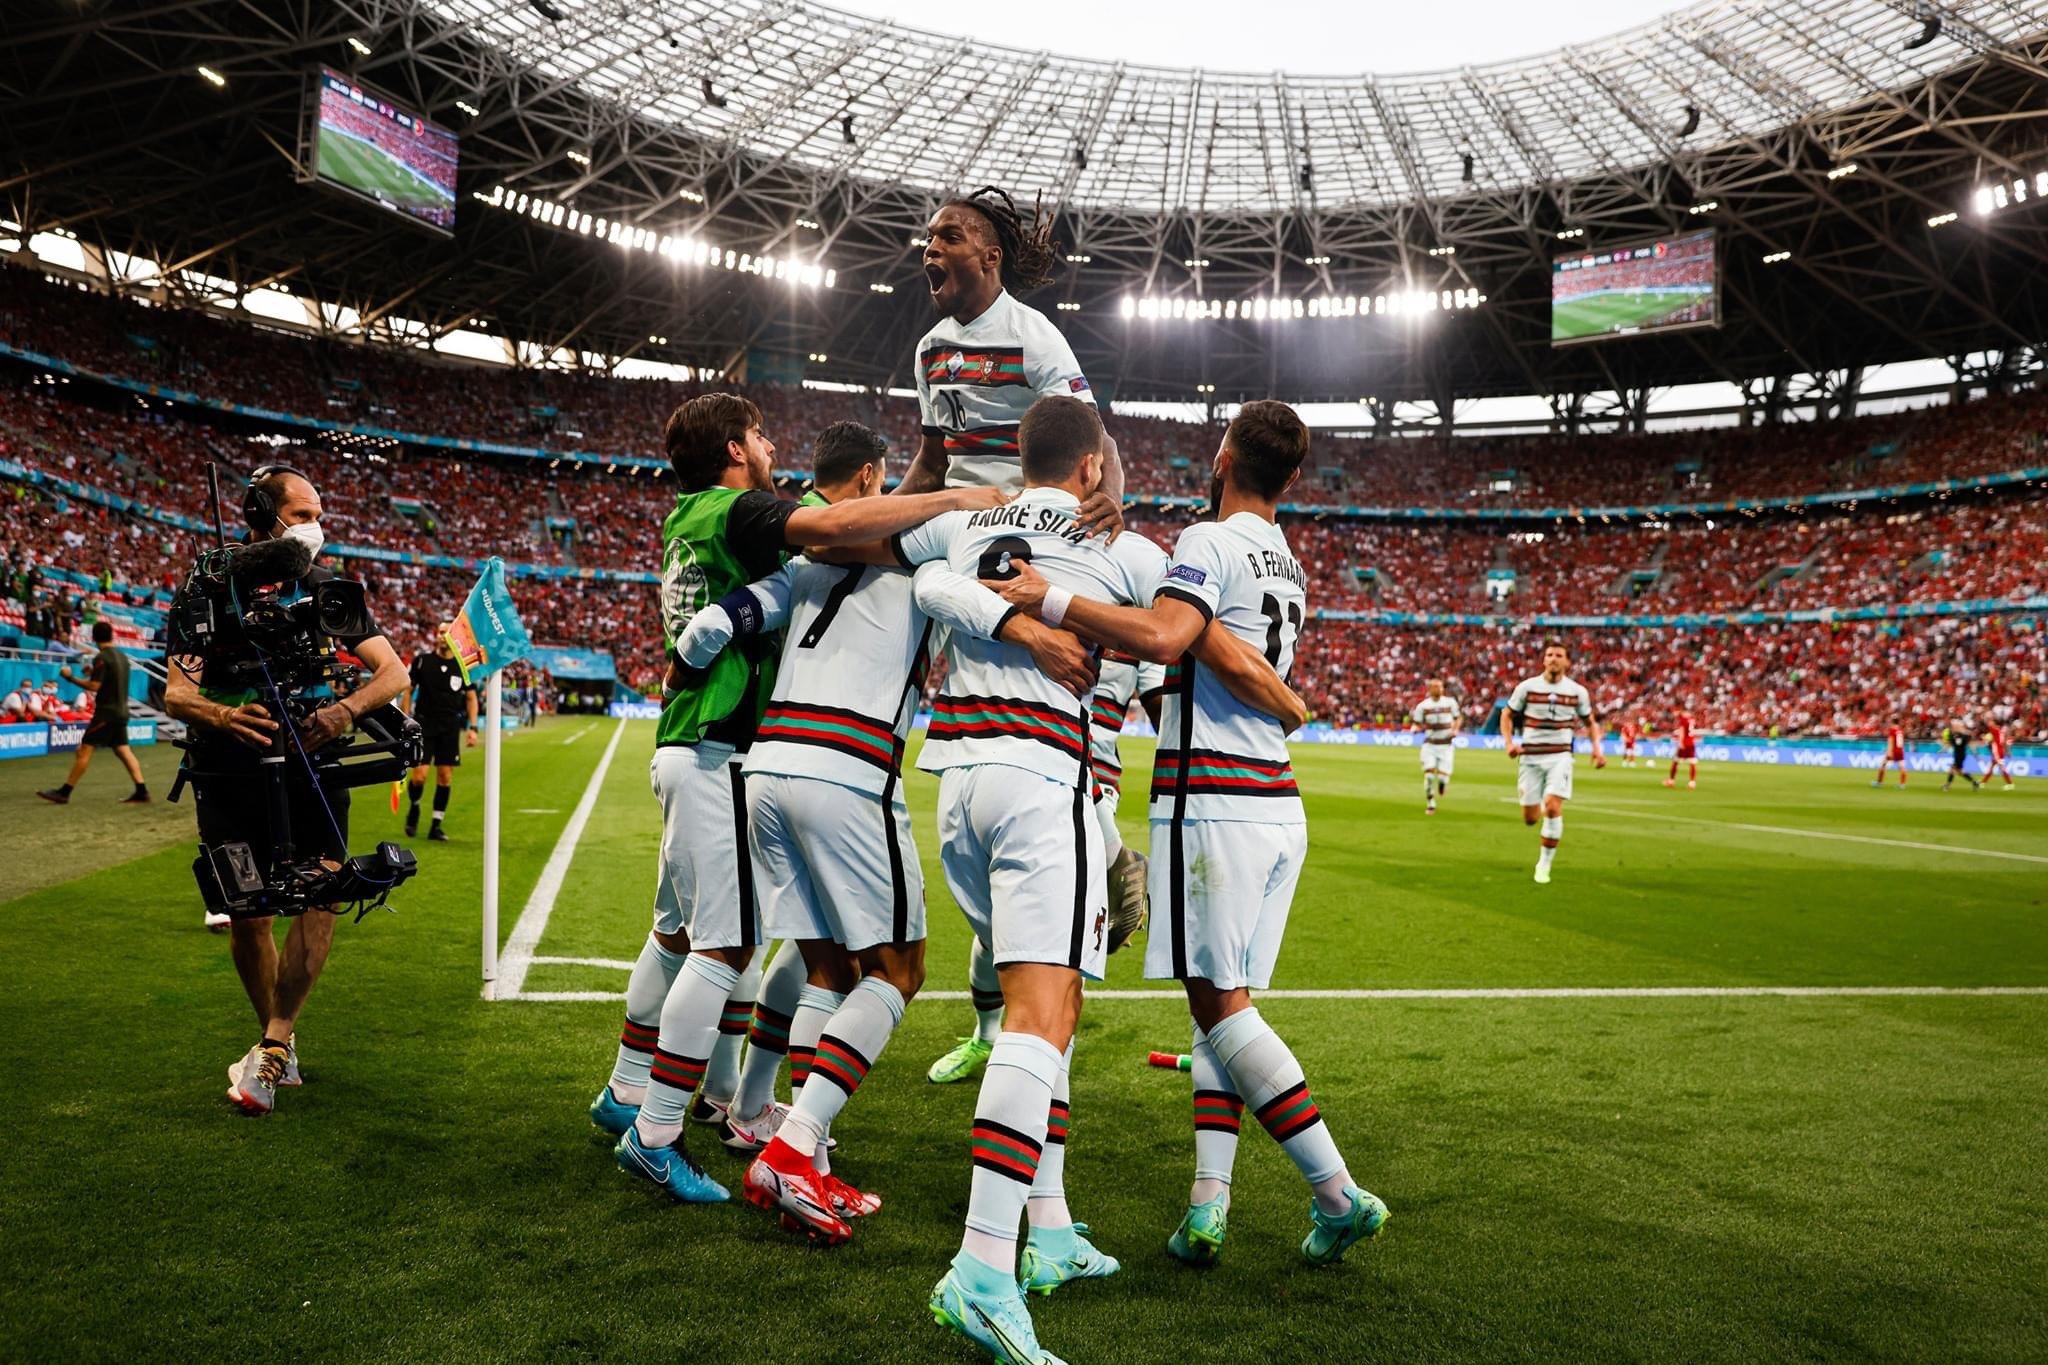 [SOI GIÀY CẦU THỦ]: Đội tuyển Bồ Đào Nha mang gì thi đấu EURO 2020?